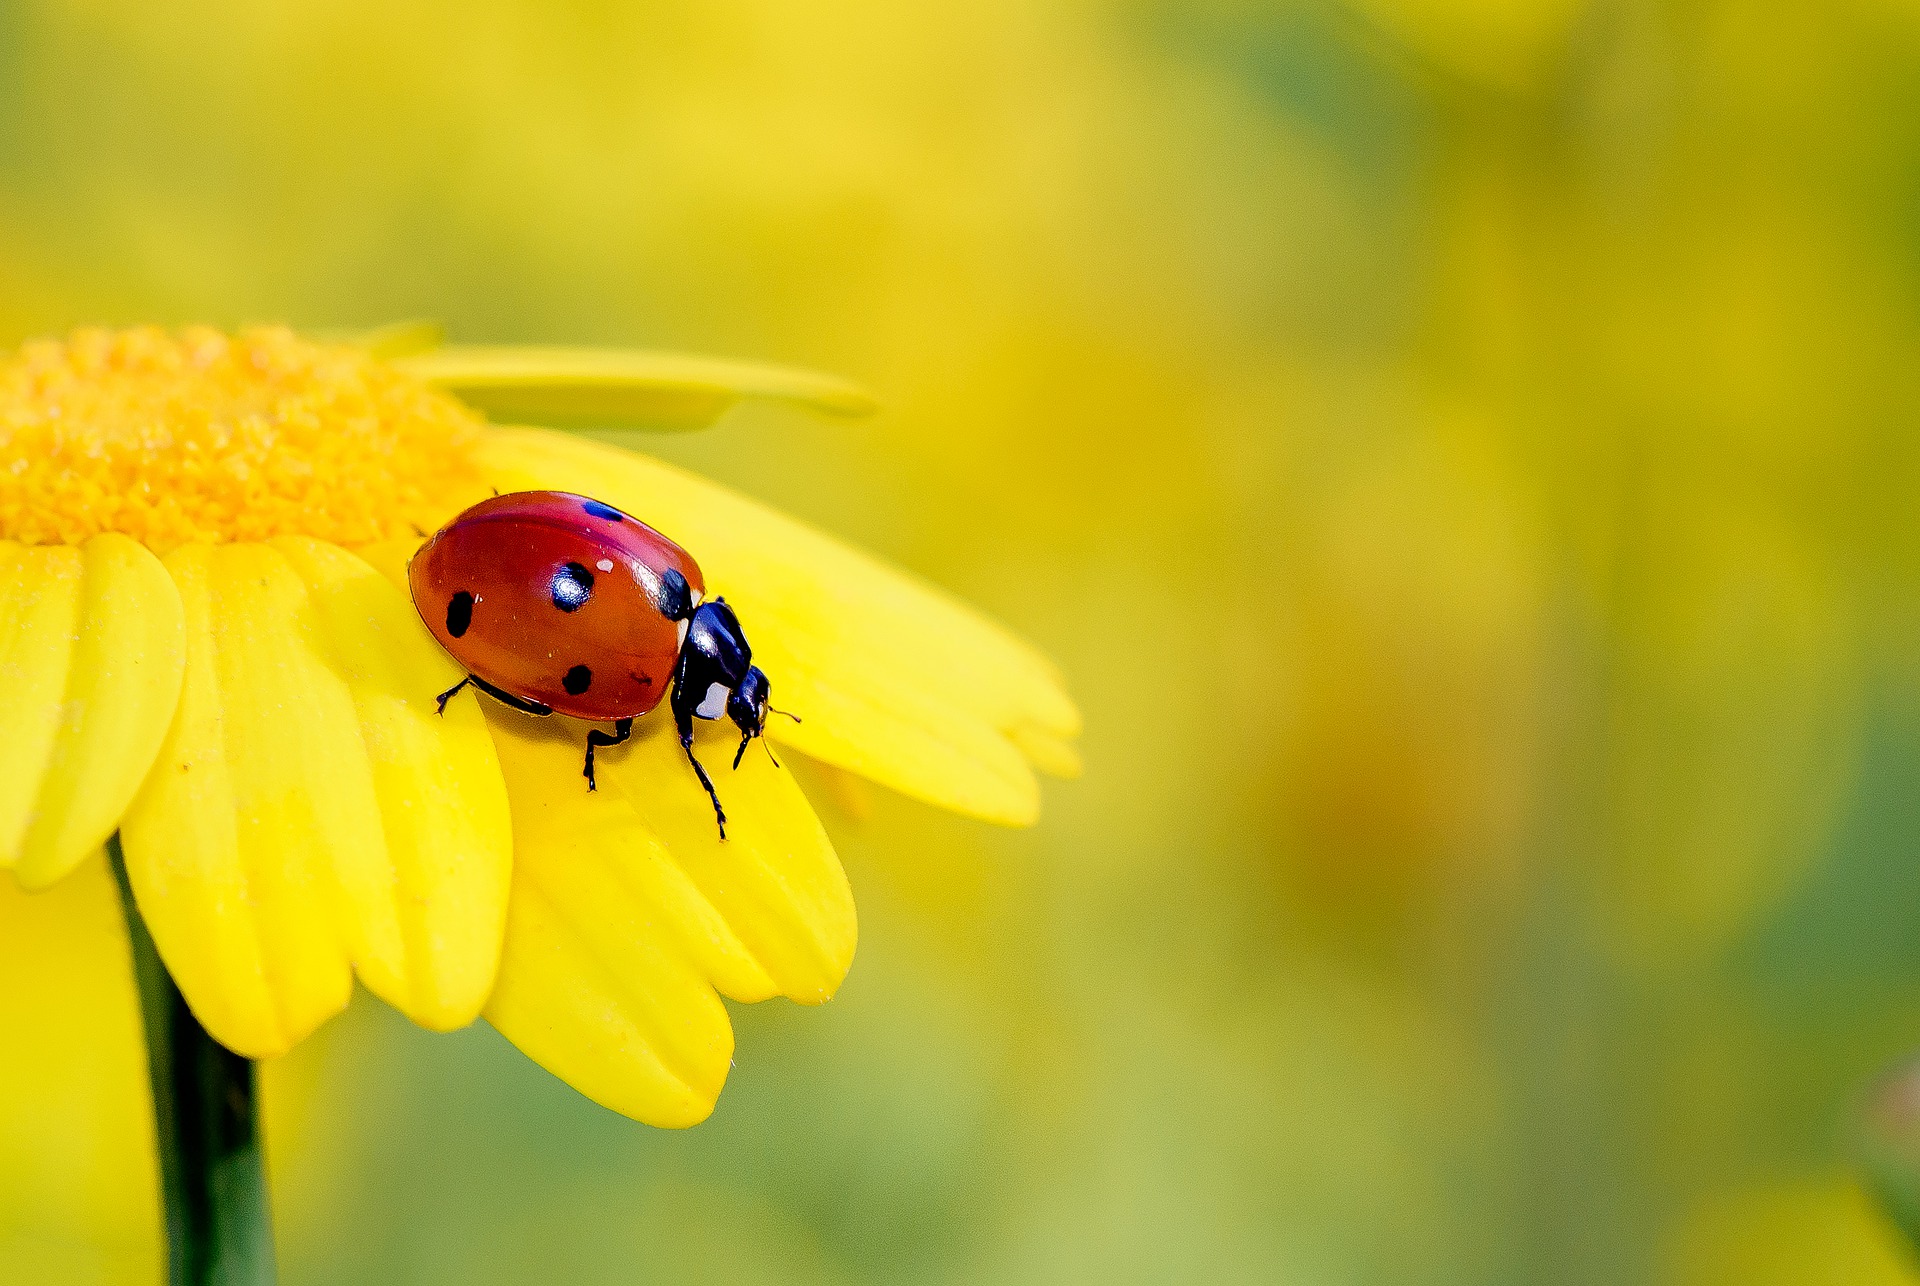 lady bug on a daisy